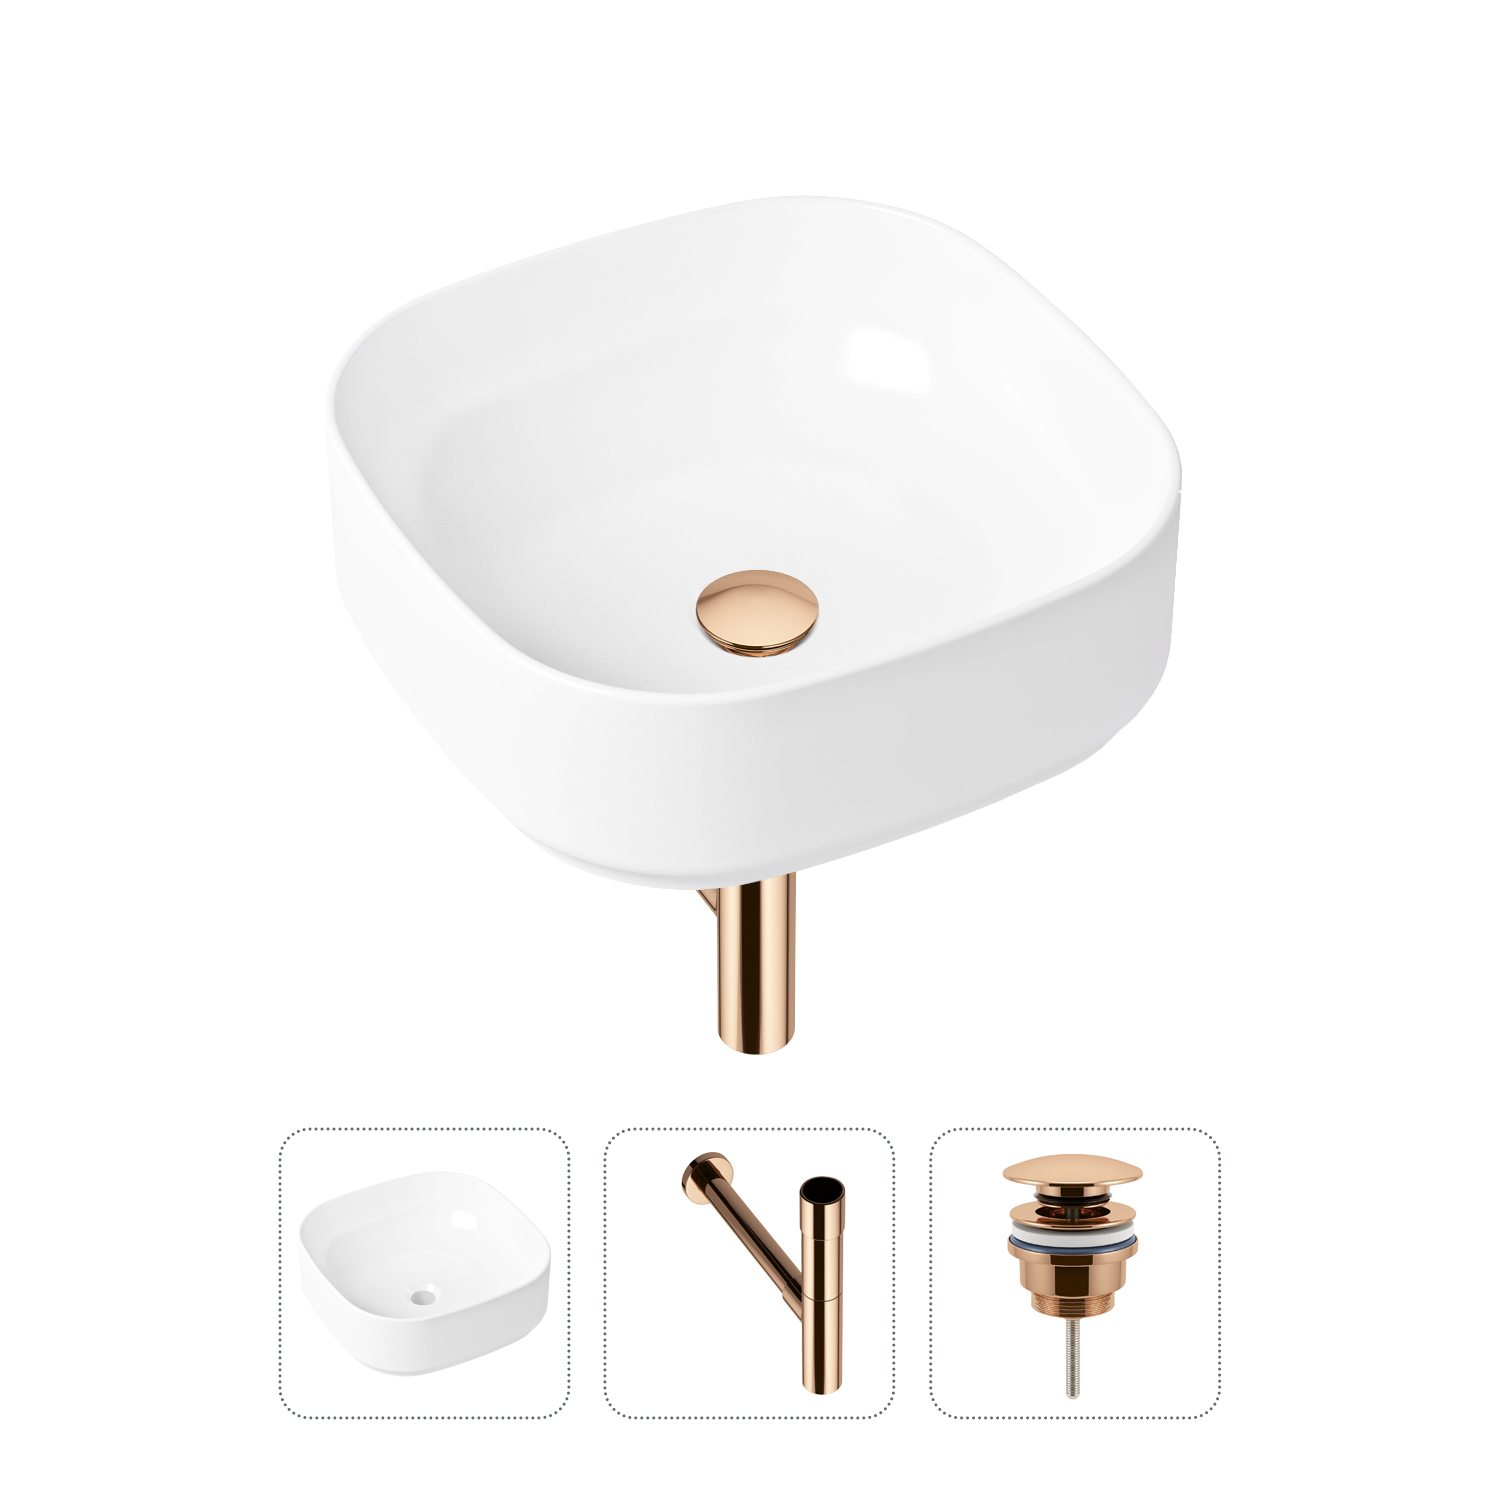 Комплект 3 в 1 Lavinia Boho Bathroom Sink 21520248: раковина 40 см, сифон, донный клапан комплект 3 в 1 lavinia boho bathroom sink 21520248 раковина 40 см сифон донный клапан